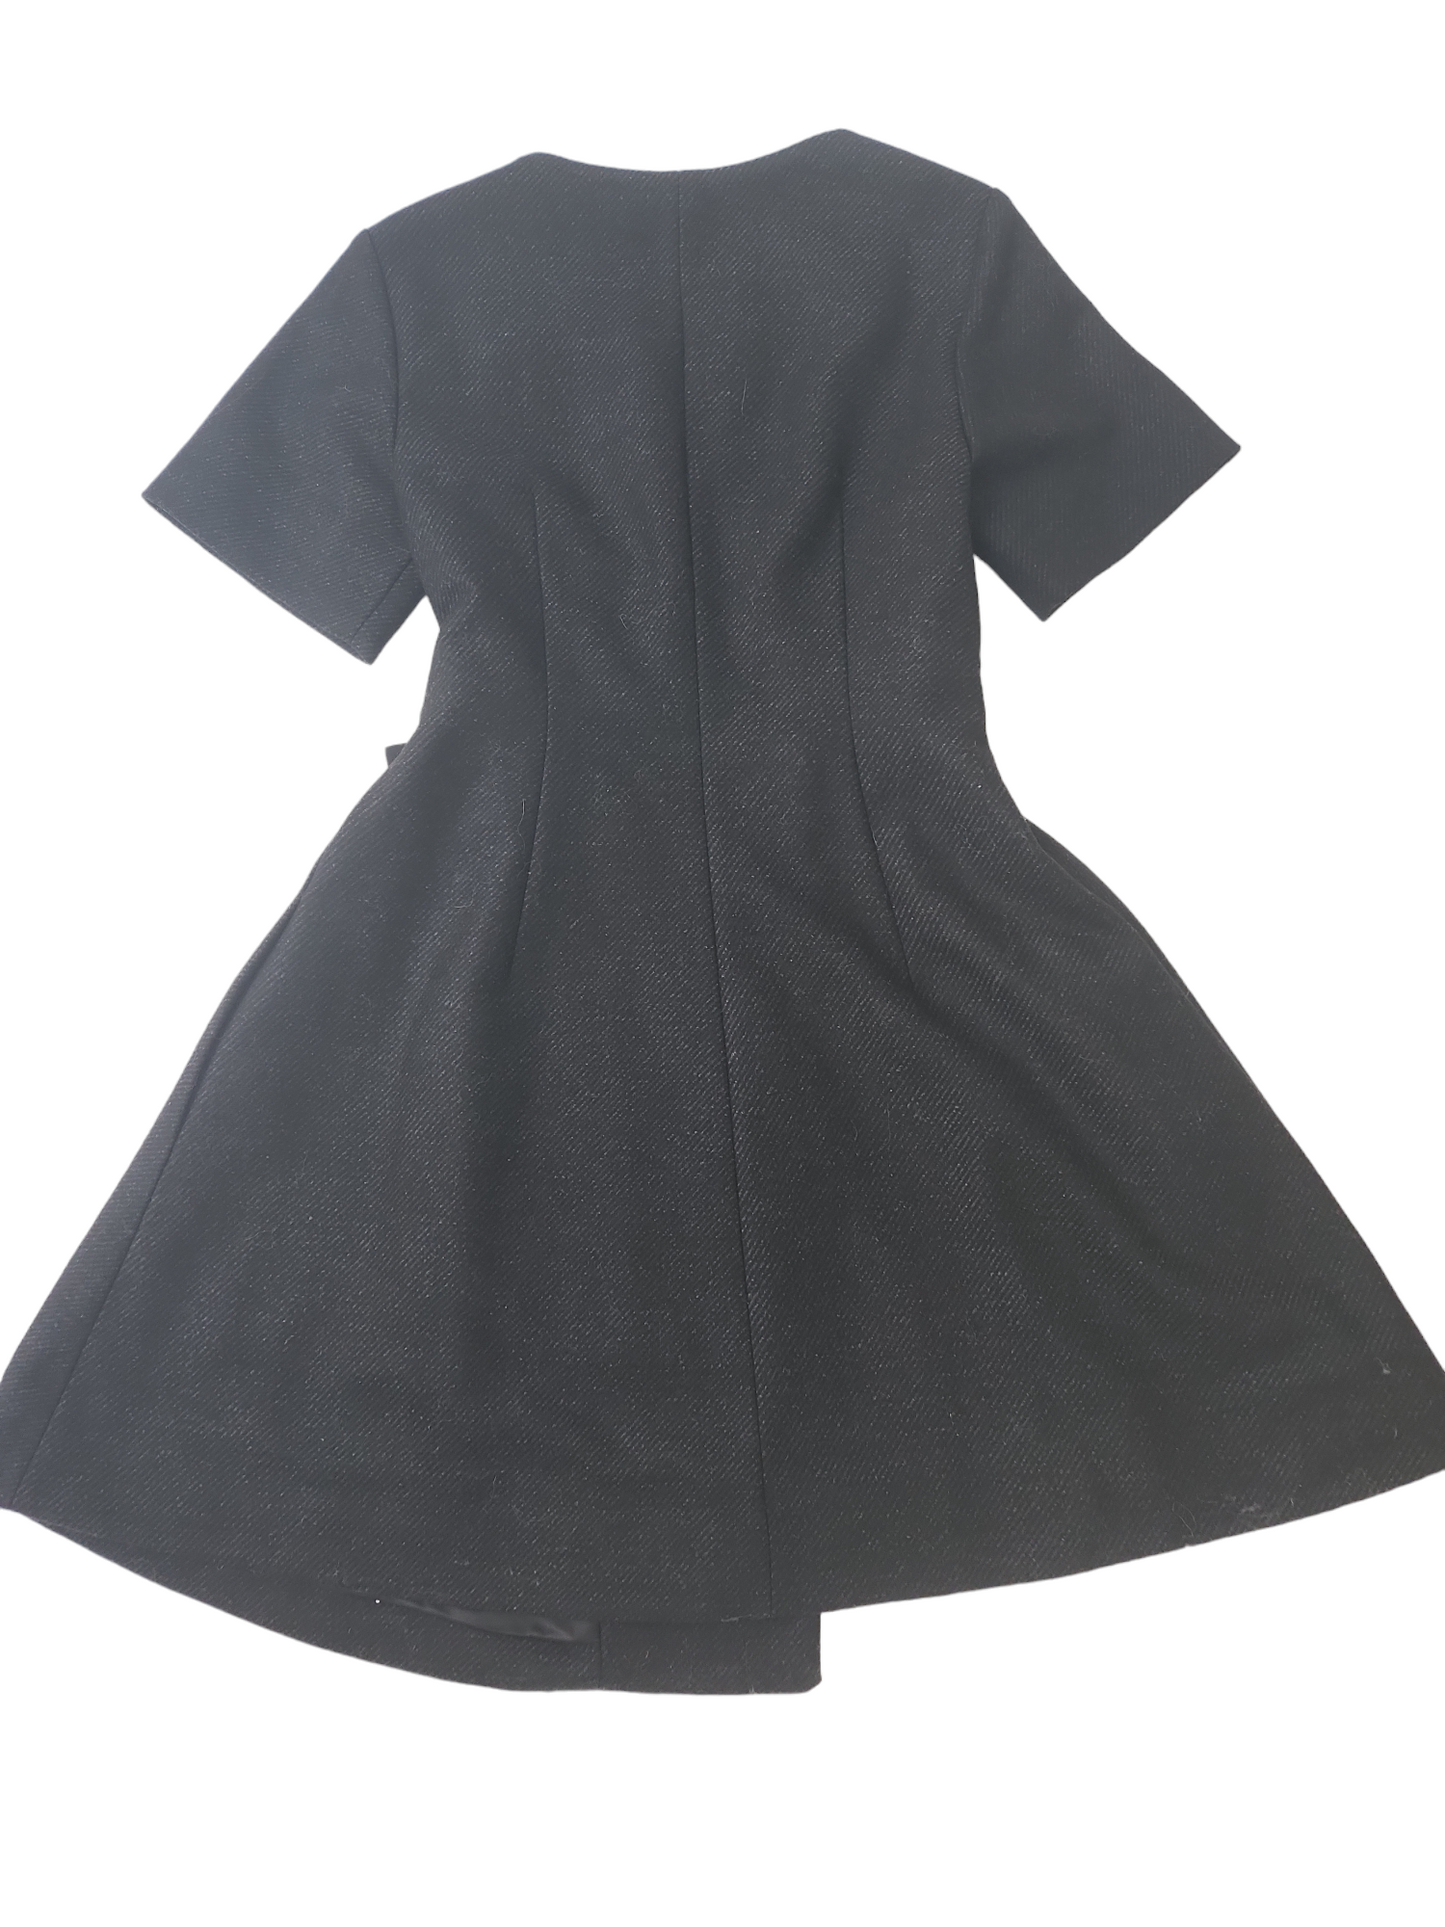 COS Black Wool Wrap Around Dress Size 6